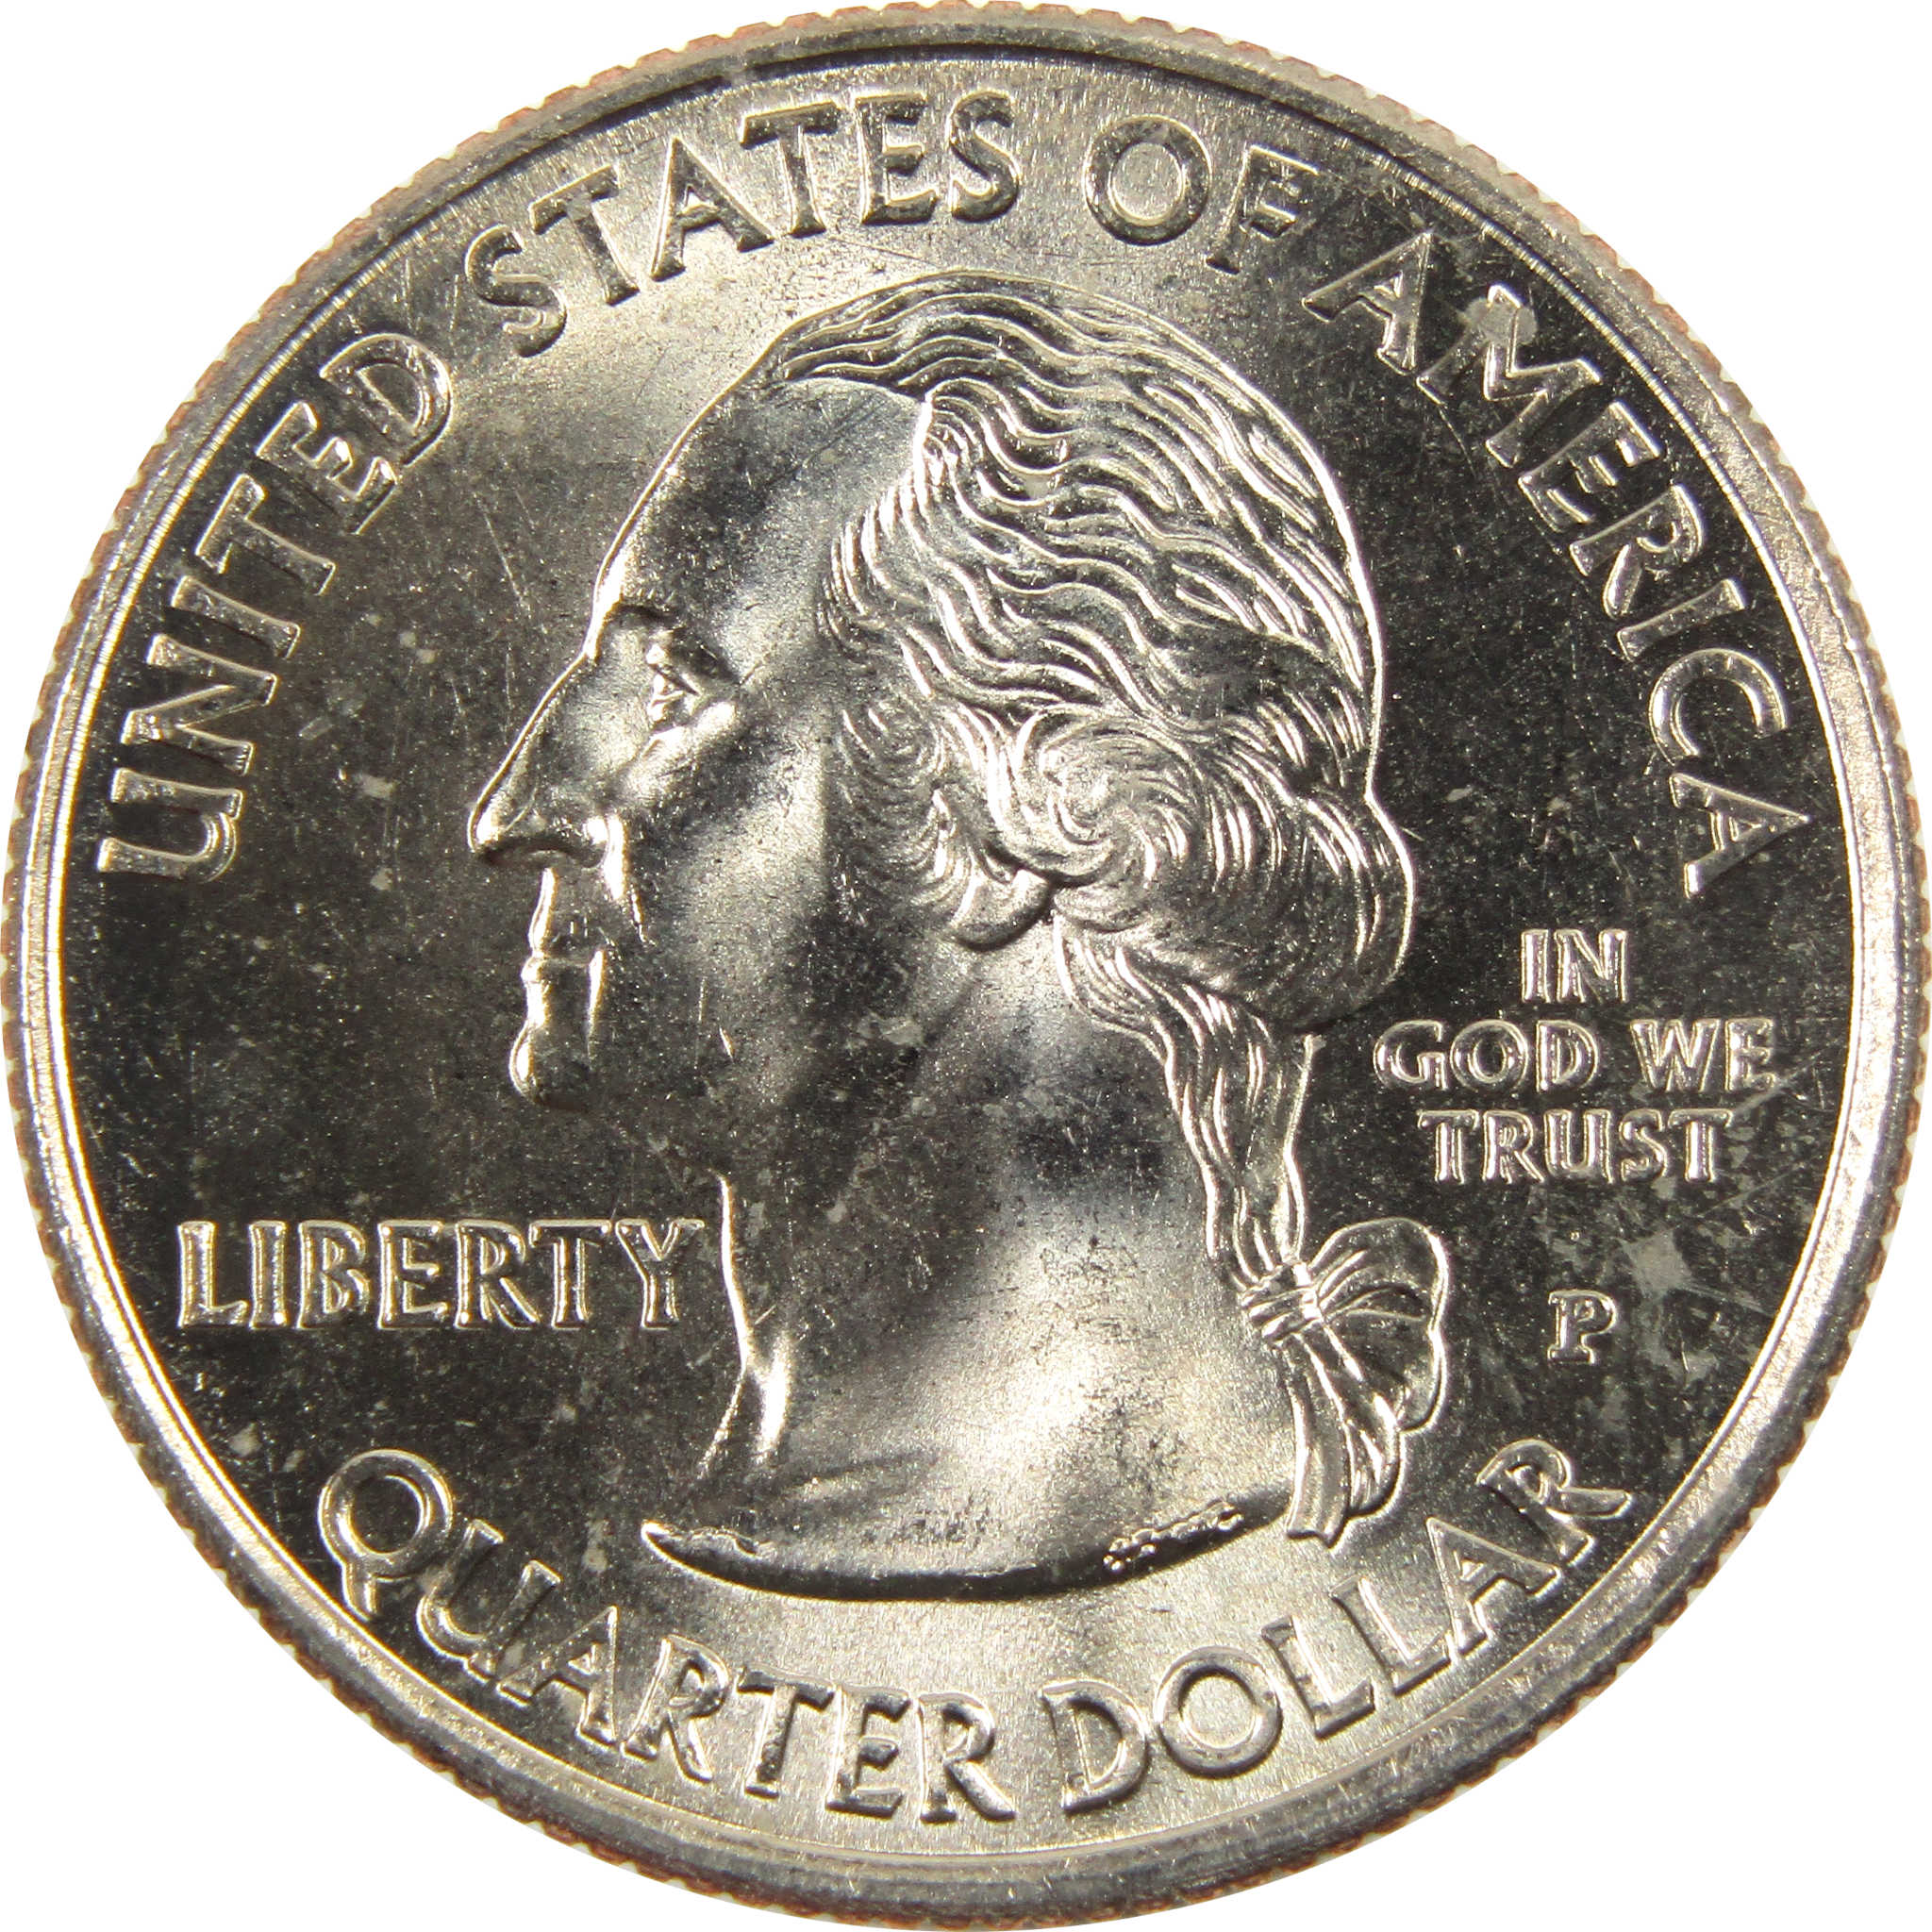 2009 P Puerto Rico Territories Quarter BU Uncirculated Clad 25c Coin